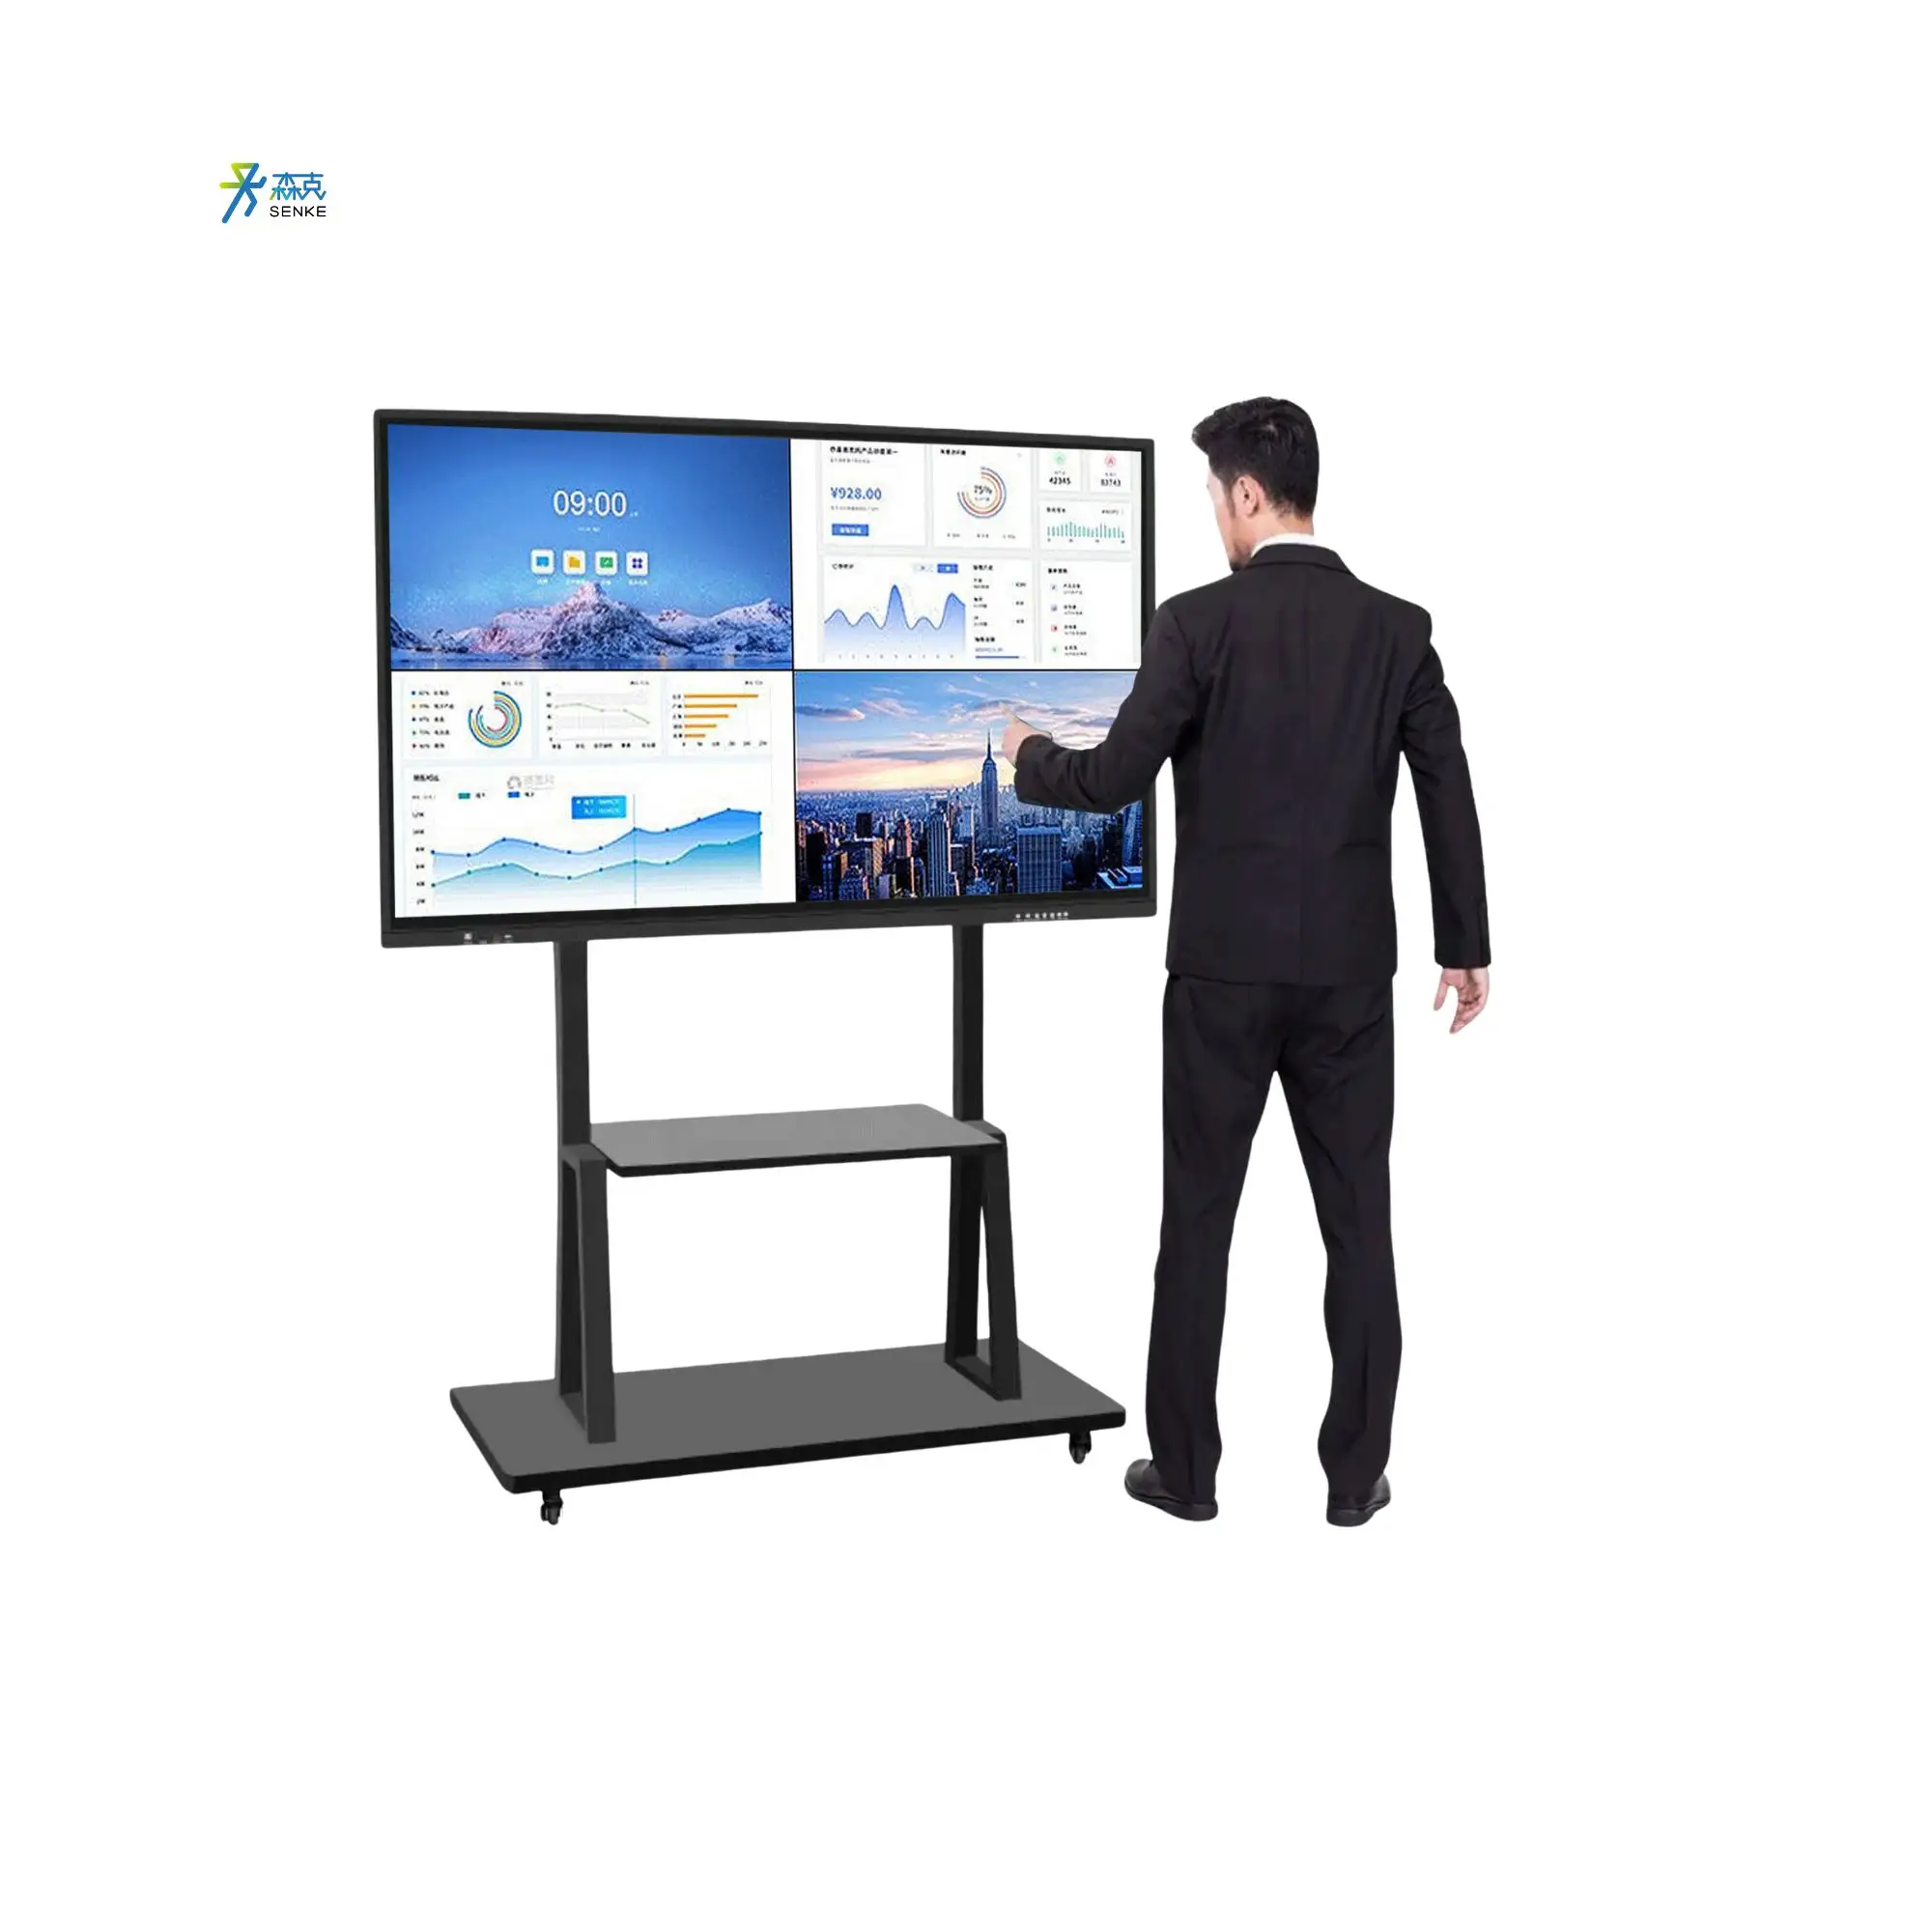 Senke Interactief Whiteboard 65 Inch Digitaal Touch Alles In Een Pc Whiteboard Smart Board Interactief Whiteboard